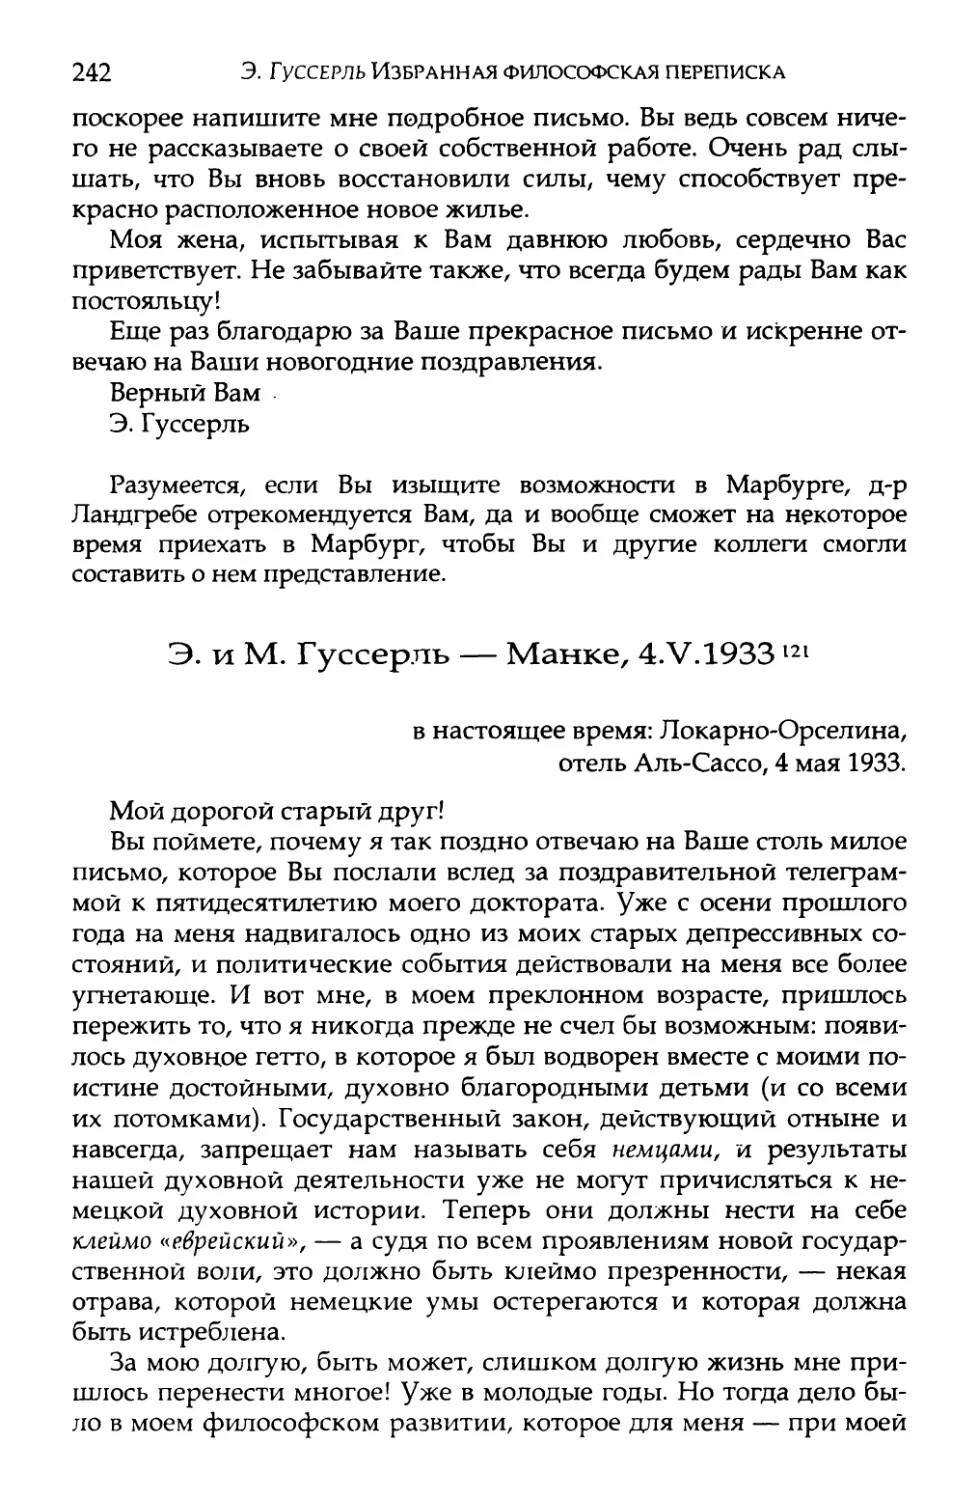 Э. и М. Гуссерль — Манке, 4.V.1933. Перевод Е. В. Борисова